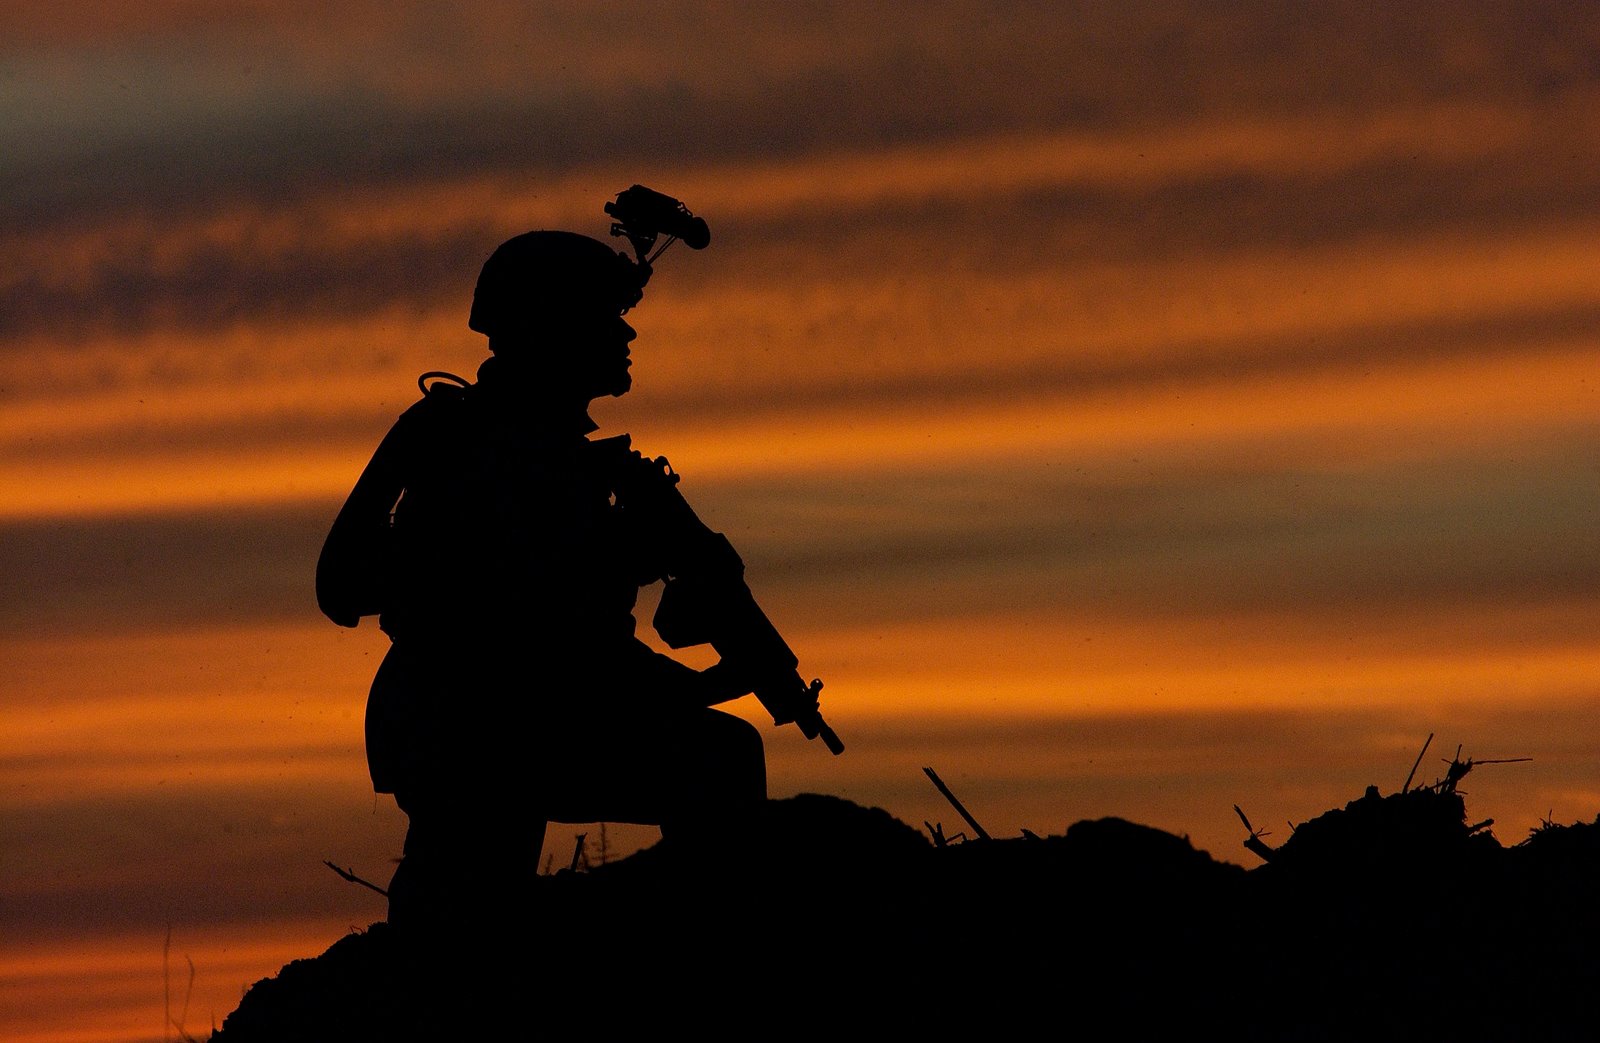 [sunset+soldier.jpg]